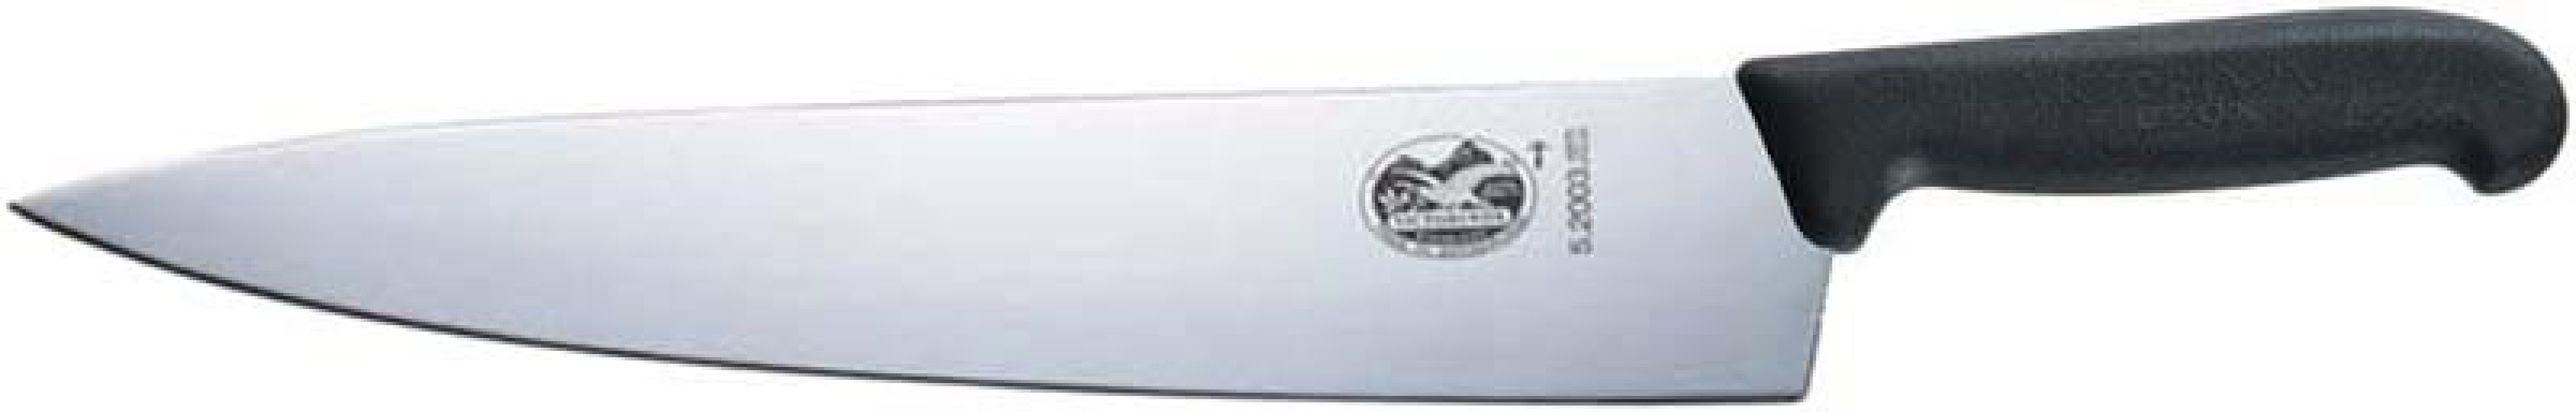 Couteau de chef Victorinox 31 cm / manche fibrox